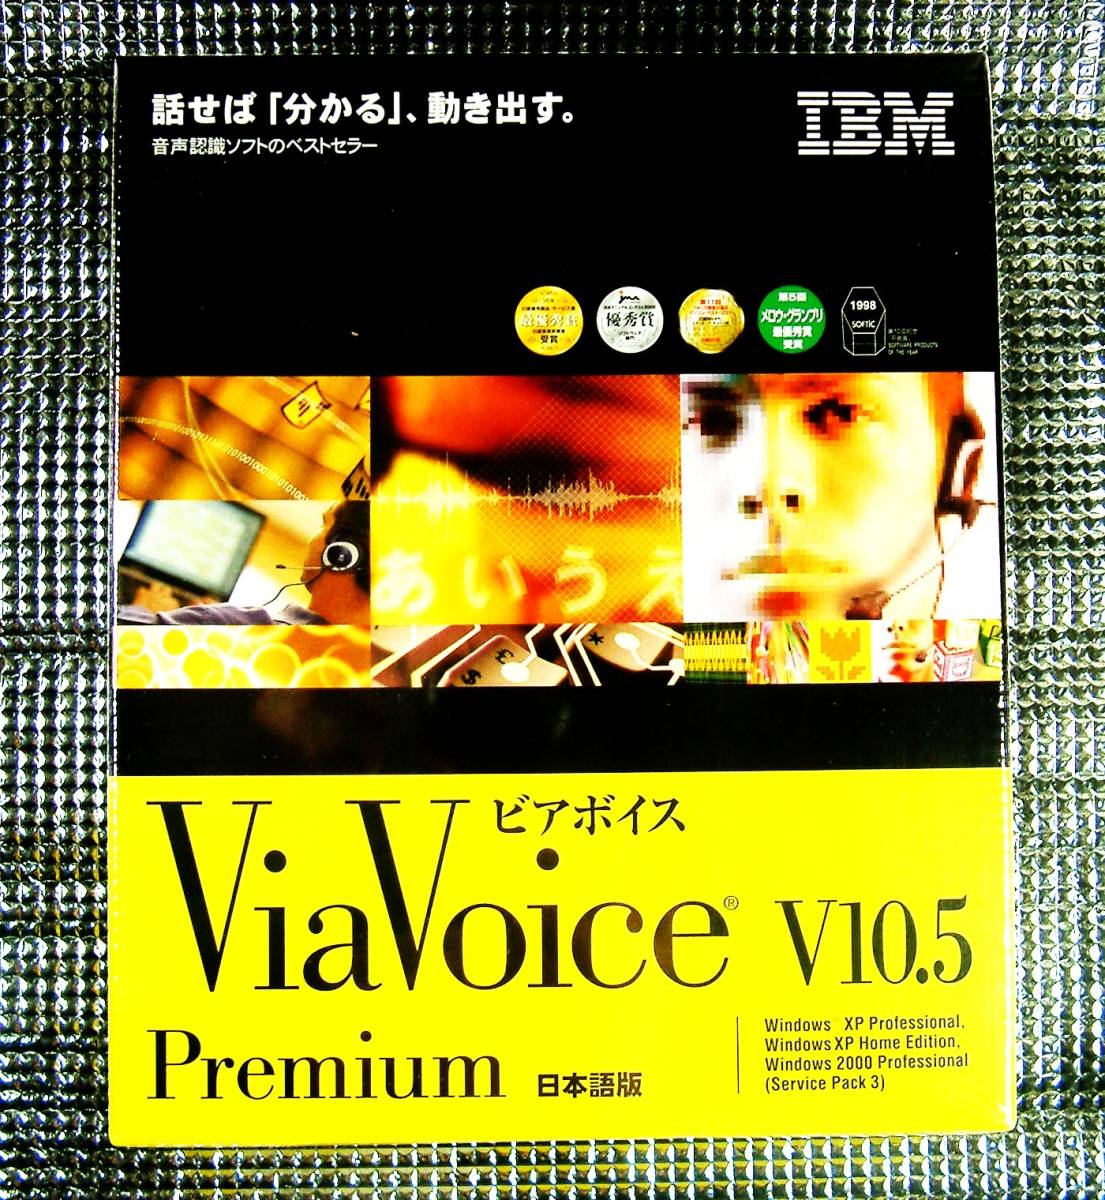 熱い販売 安心の定価販売 IBM 音声認識ソフト ViaVoice v10.5 Premium版 新品 Windows用 未開封 ビアボイス プレミアム ボイス 声 で 操作 入力 SpeakPad gnusolaris.org gnusolaris.org